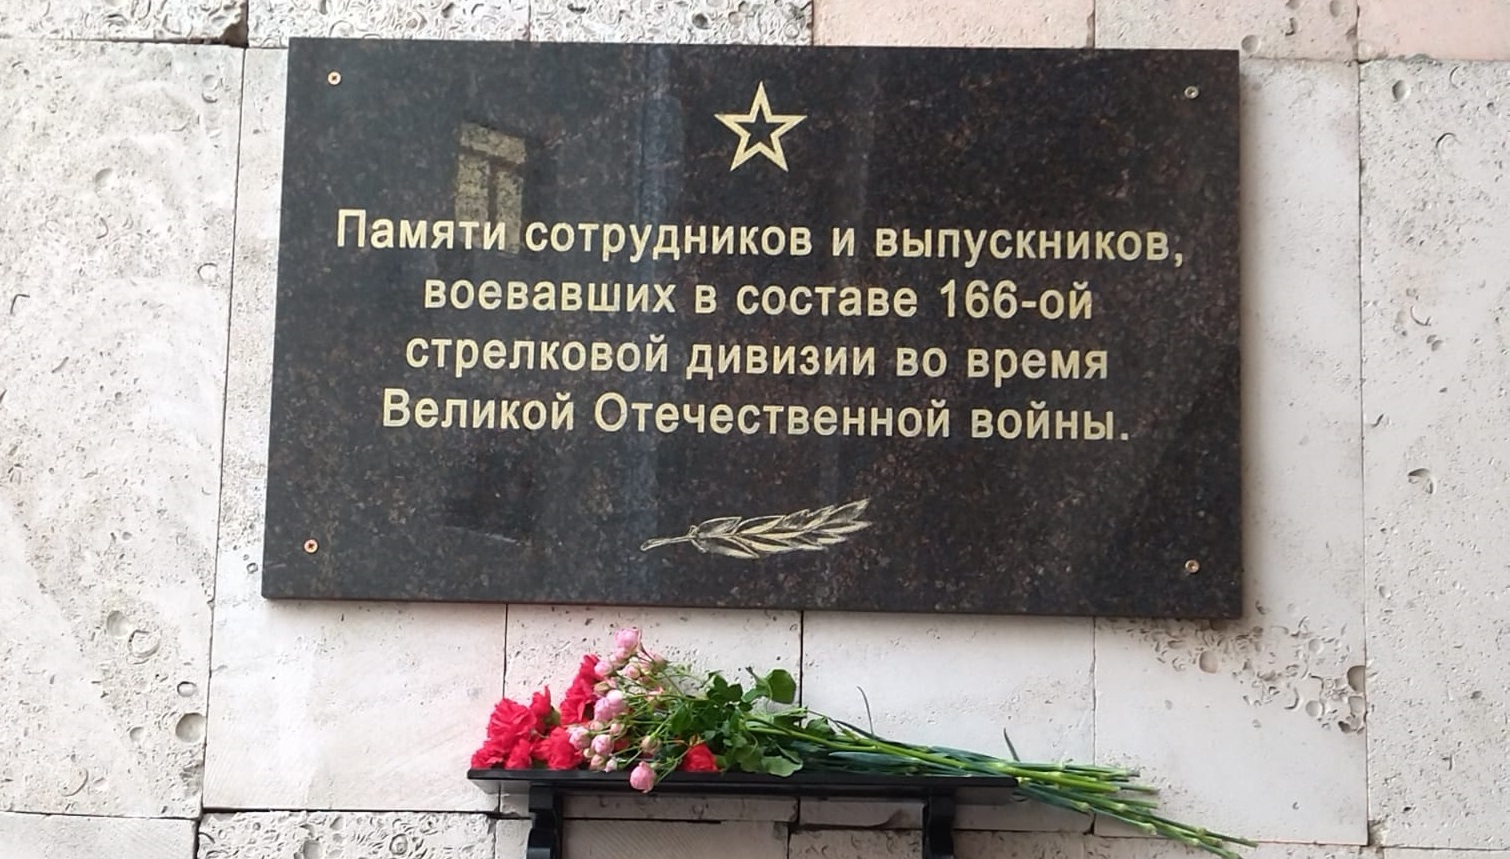 Открытие мемориальной доски в память о сотрудниках и выпускниках - бойцах 166-ой стрелковой дивизии